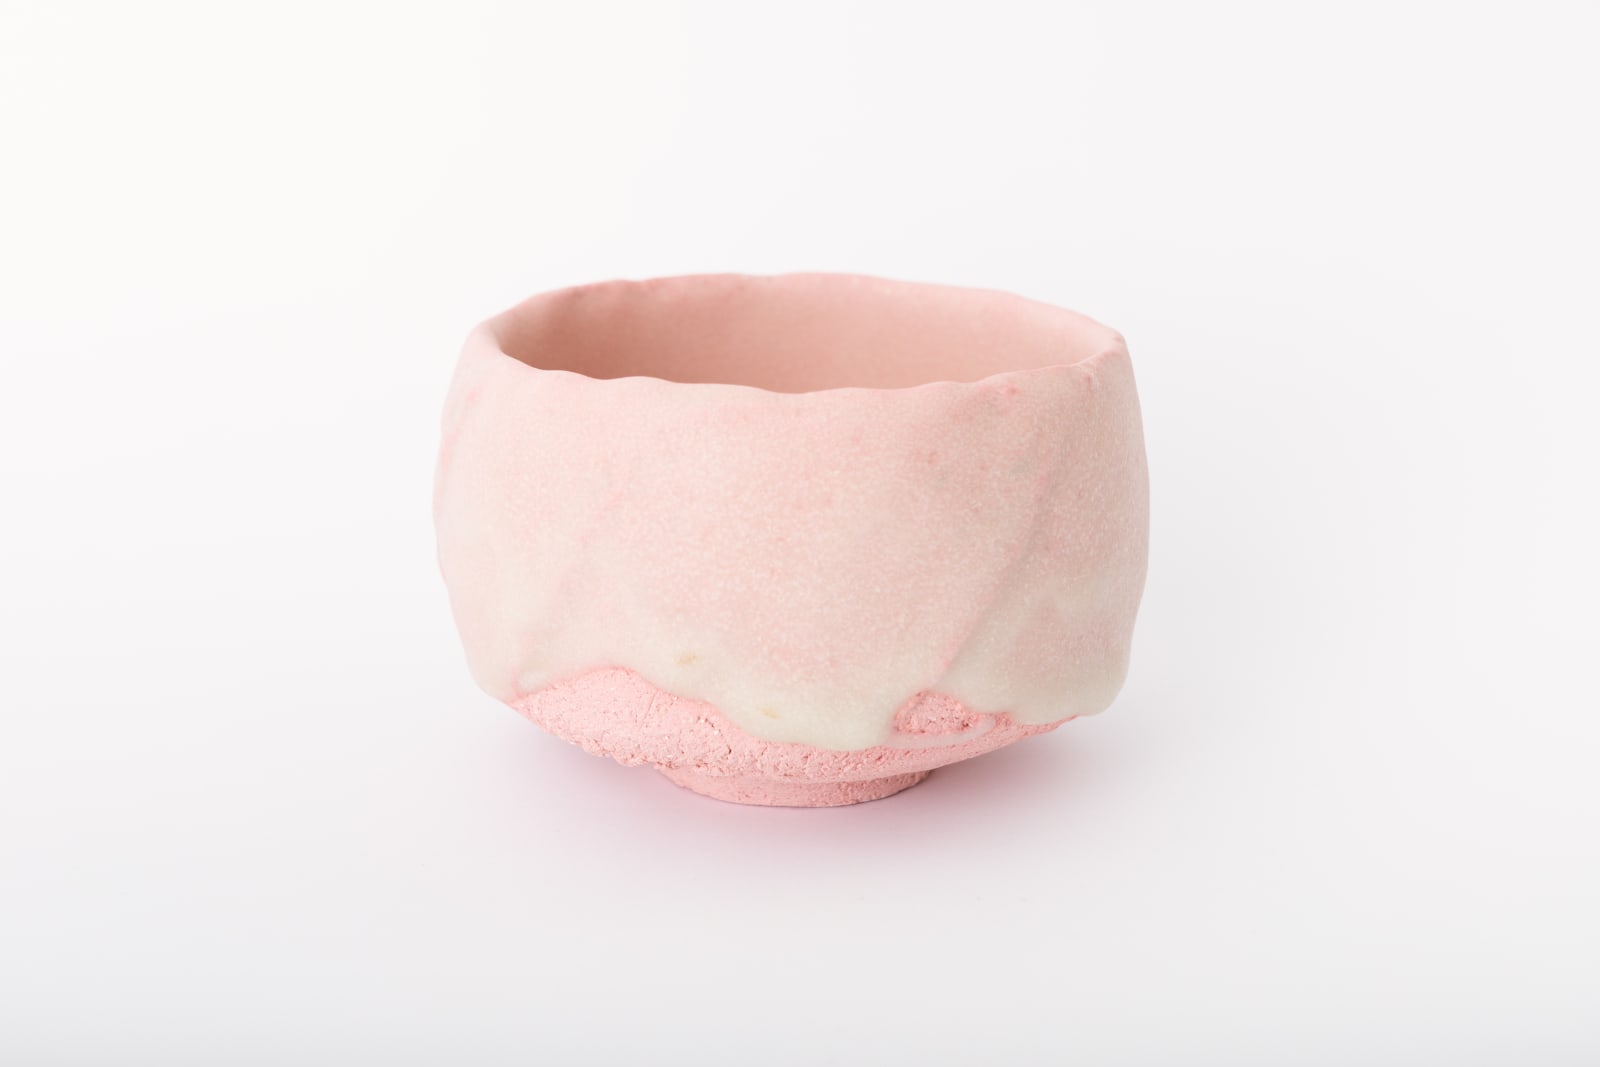 Tomoyuki Hoshino, Sugar Glazed Tea Bowl